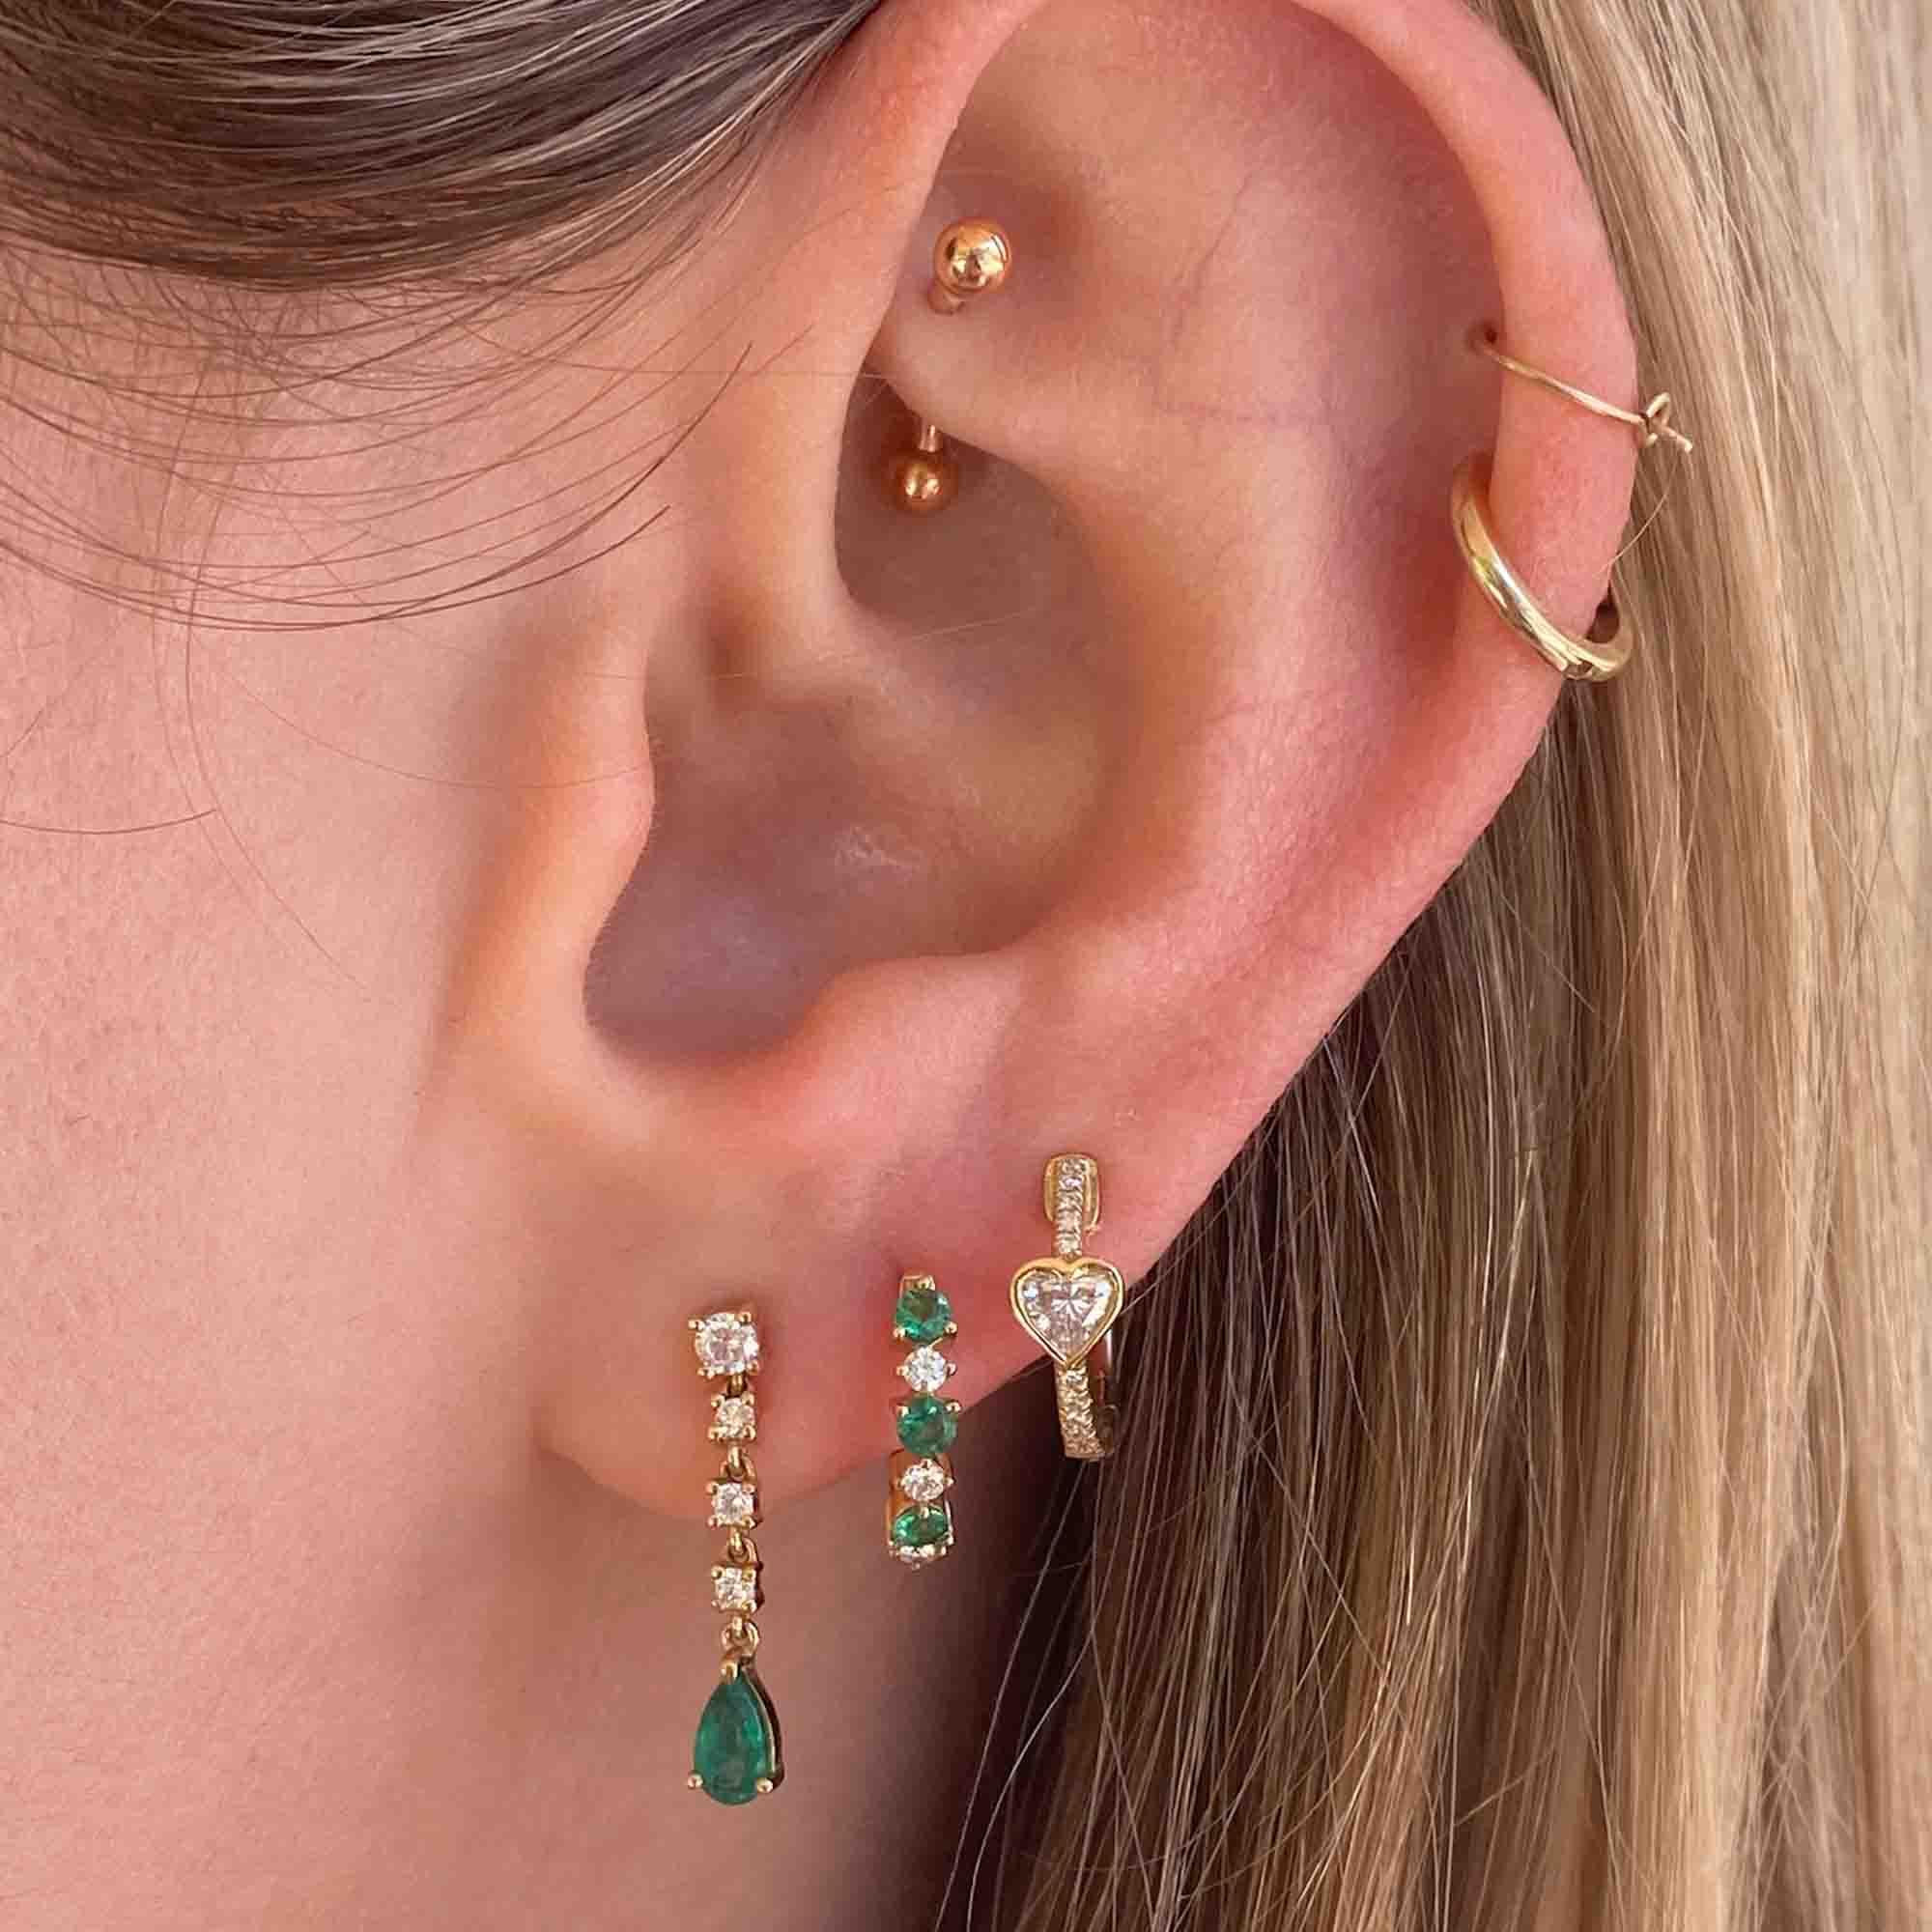 Pear Emerald Drop Earrings